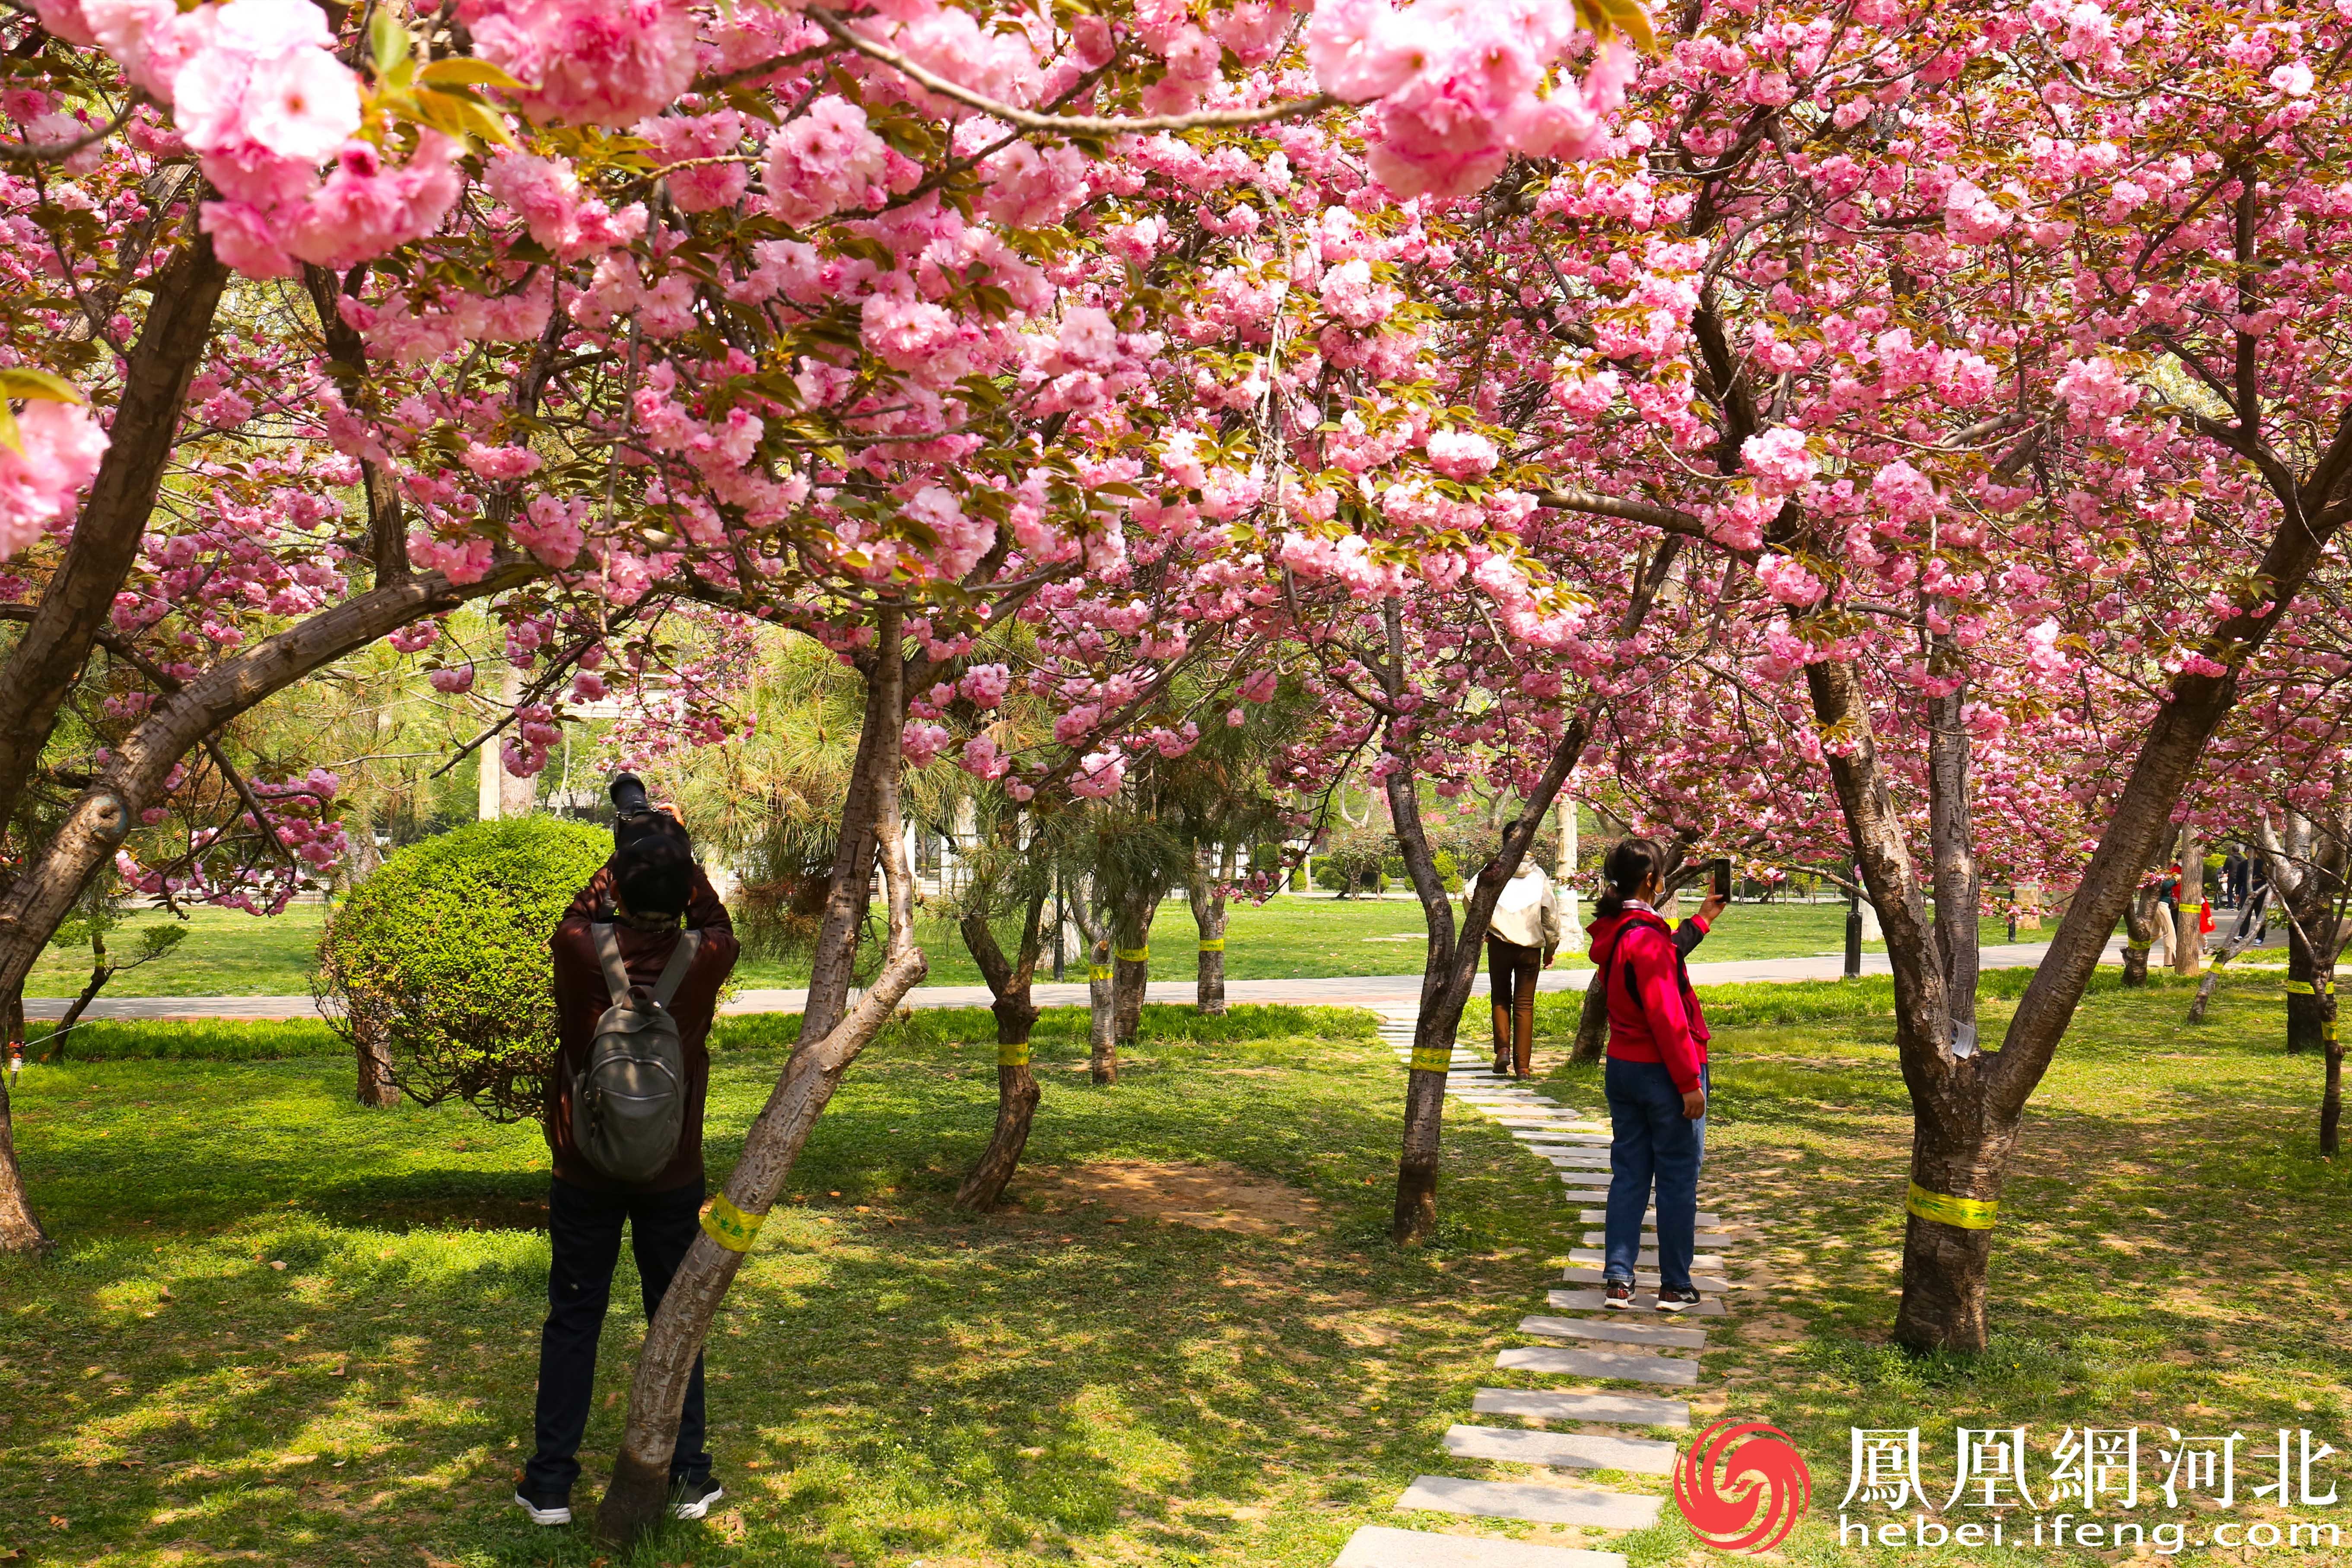 石门公园里市民们拍照记录下这春天的美好。